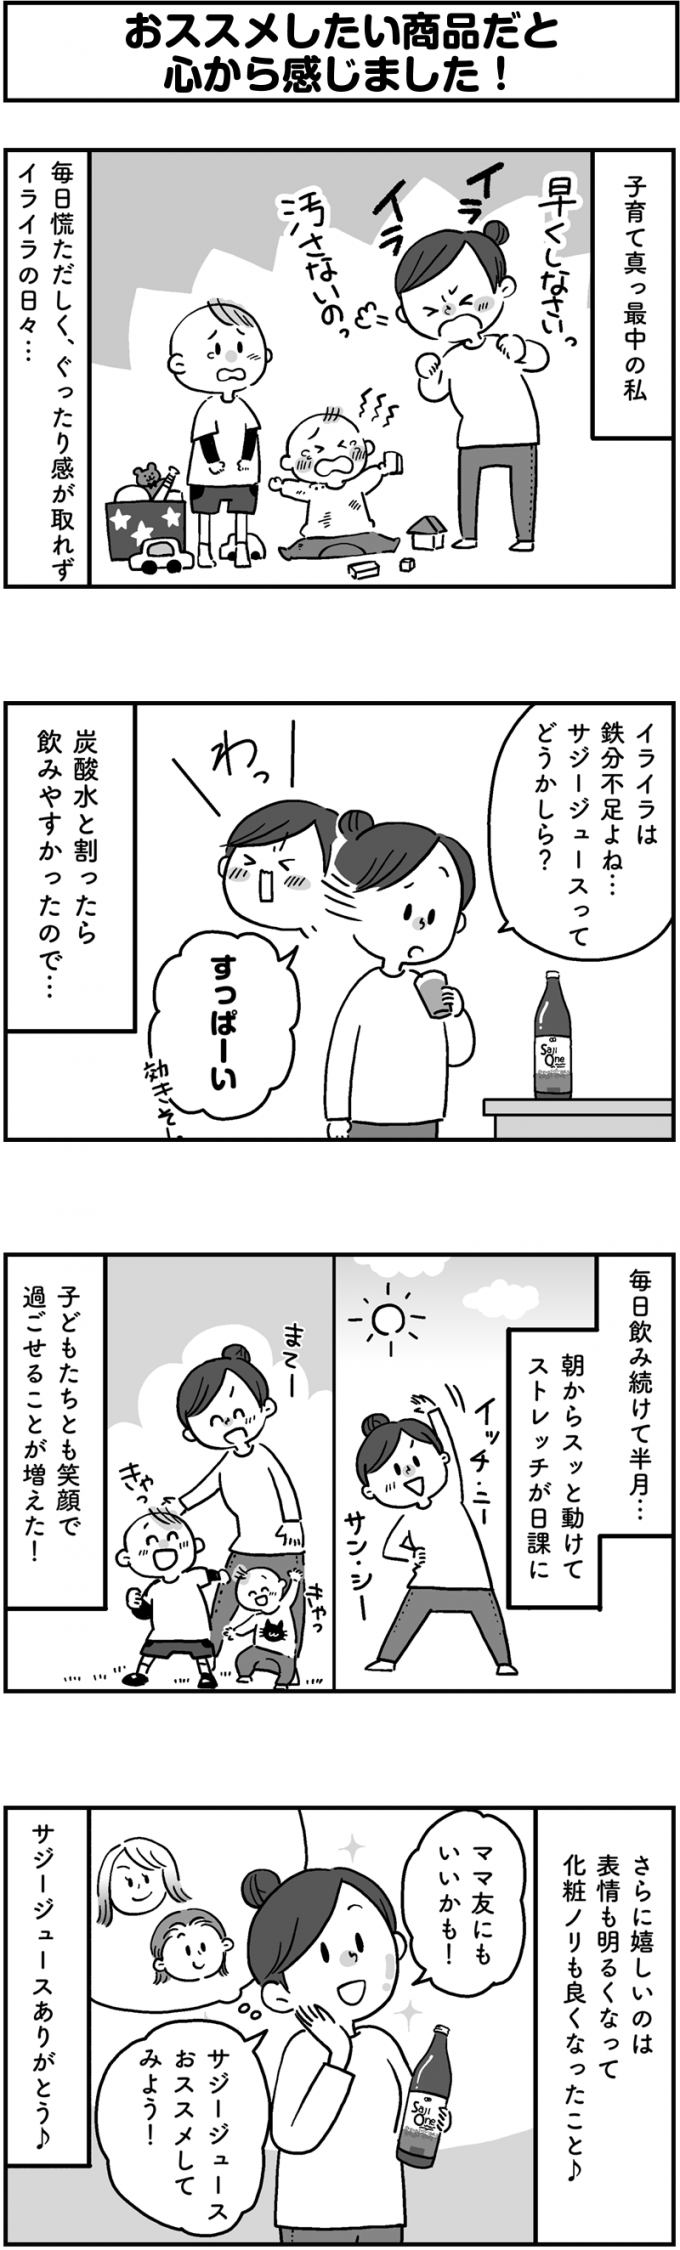  サジージュース「SajiOne」のPR4コマ漫画第3弾のサムネイル画像